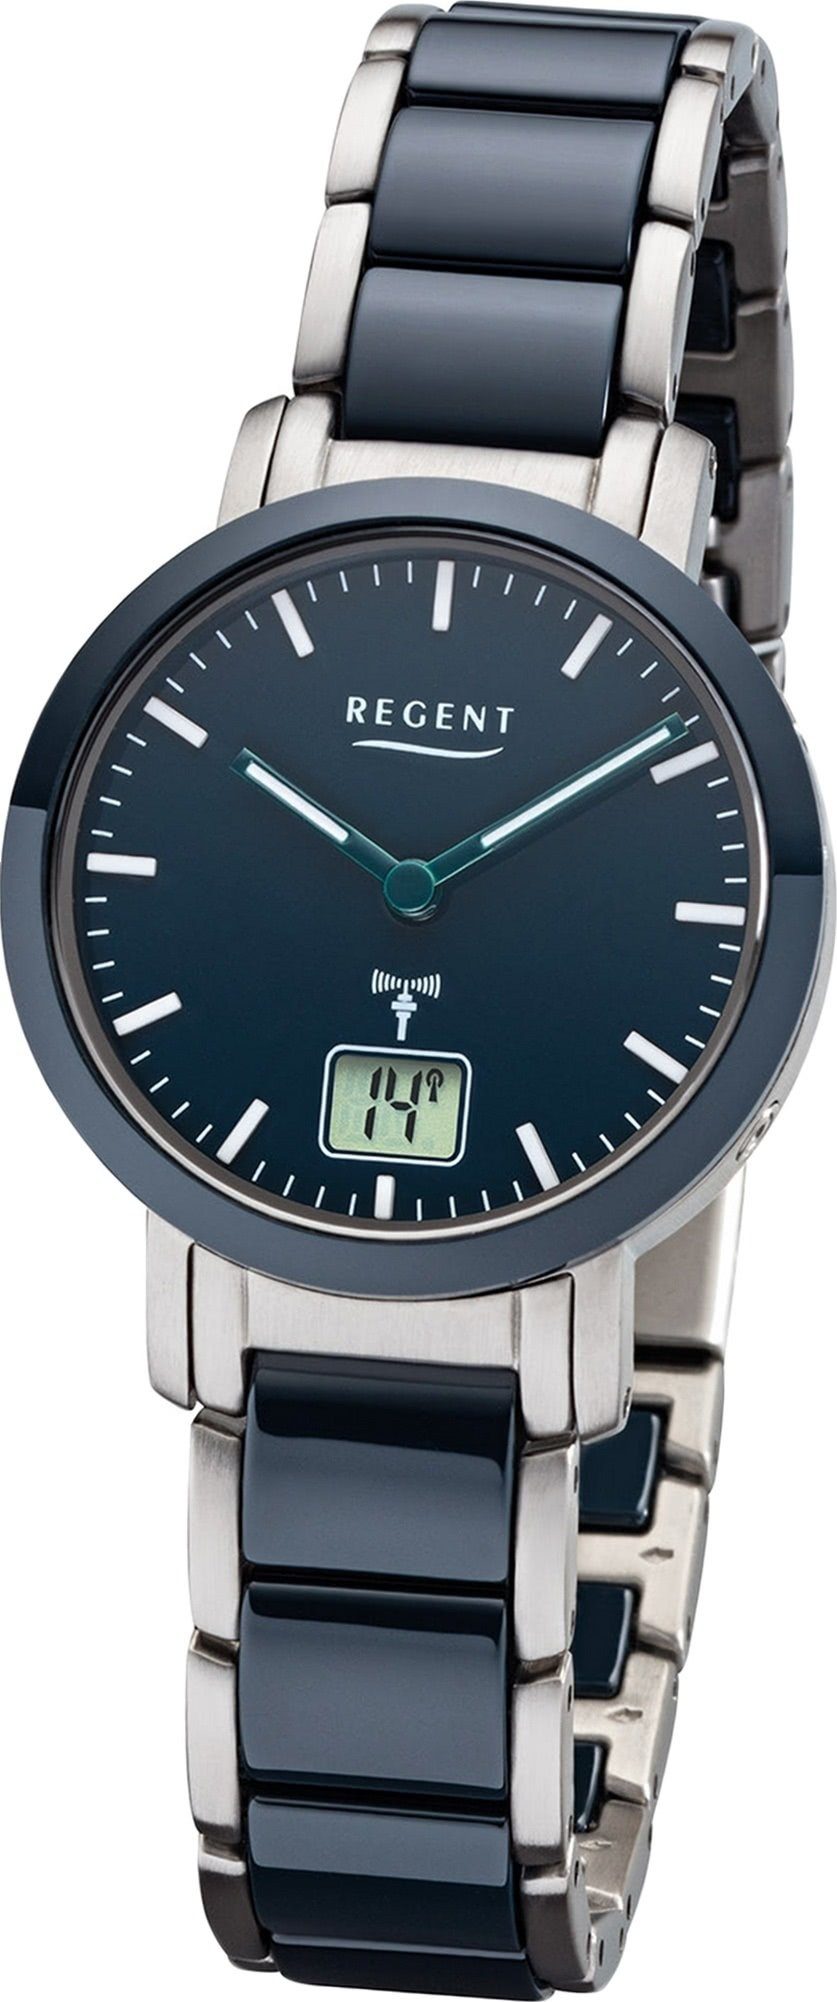 Regent Funkuhr Regent Metall Damen Uhr FR-265, Damenuhr Metallarmband blau, silber, rundes Gehäuse, klein (ca. 30mm)